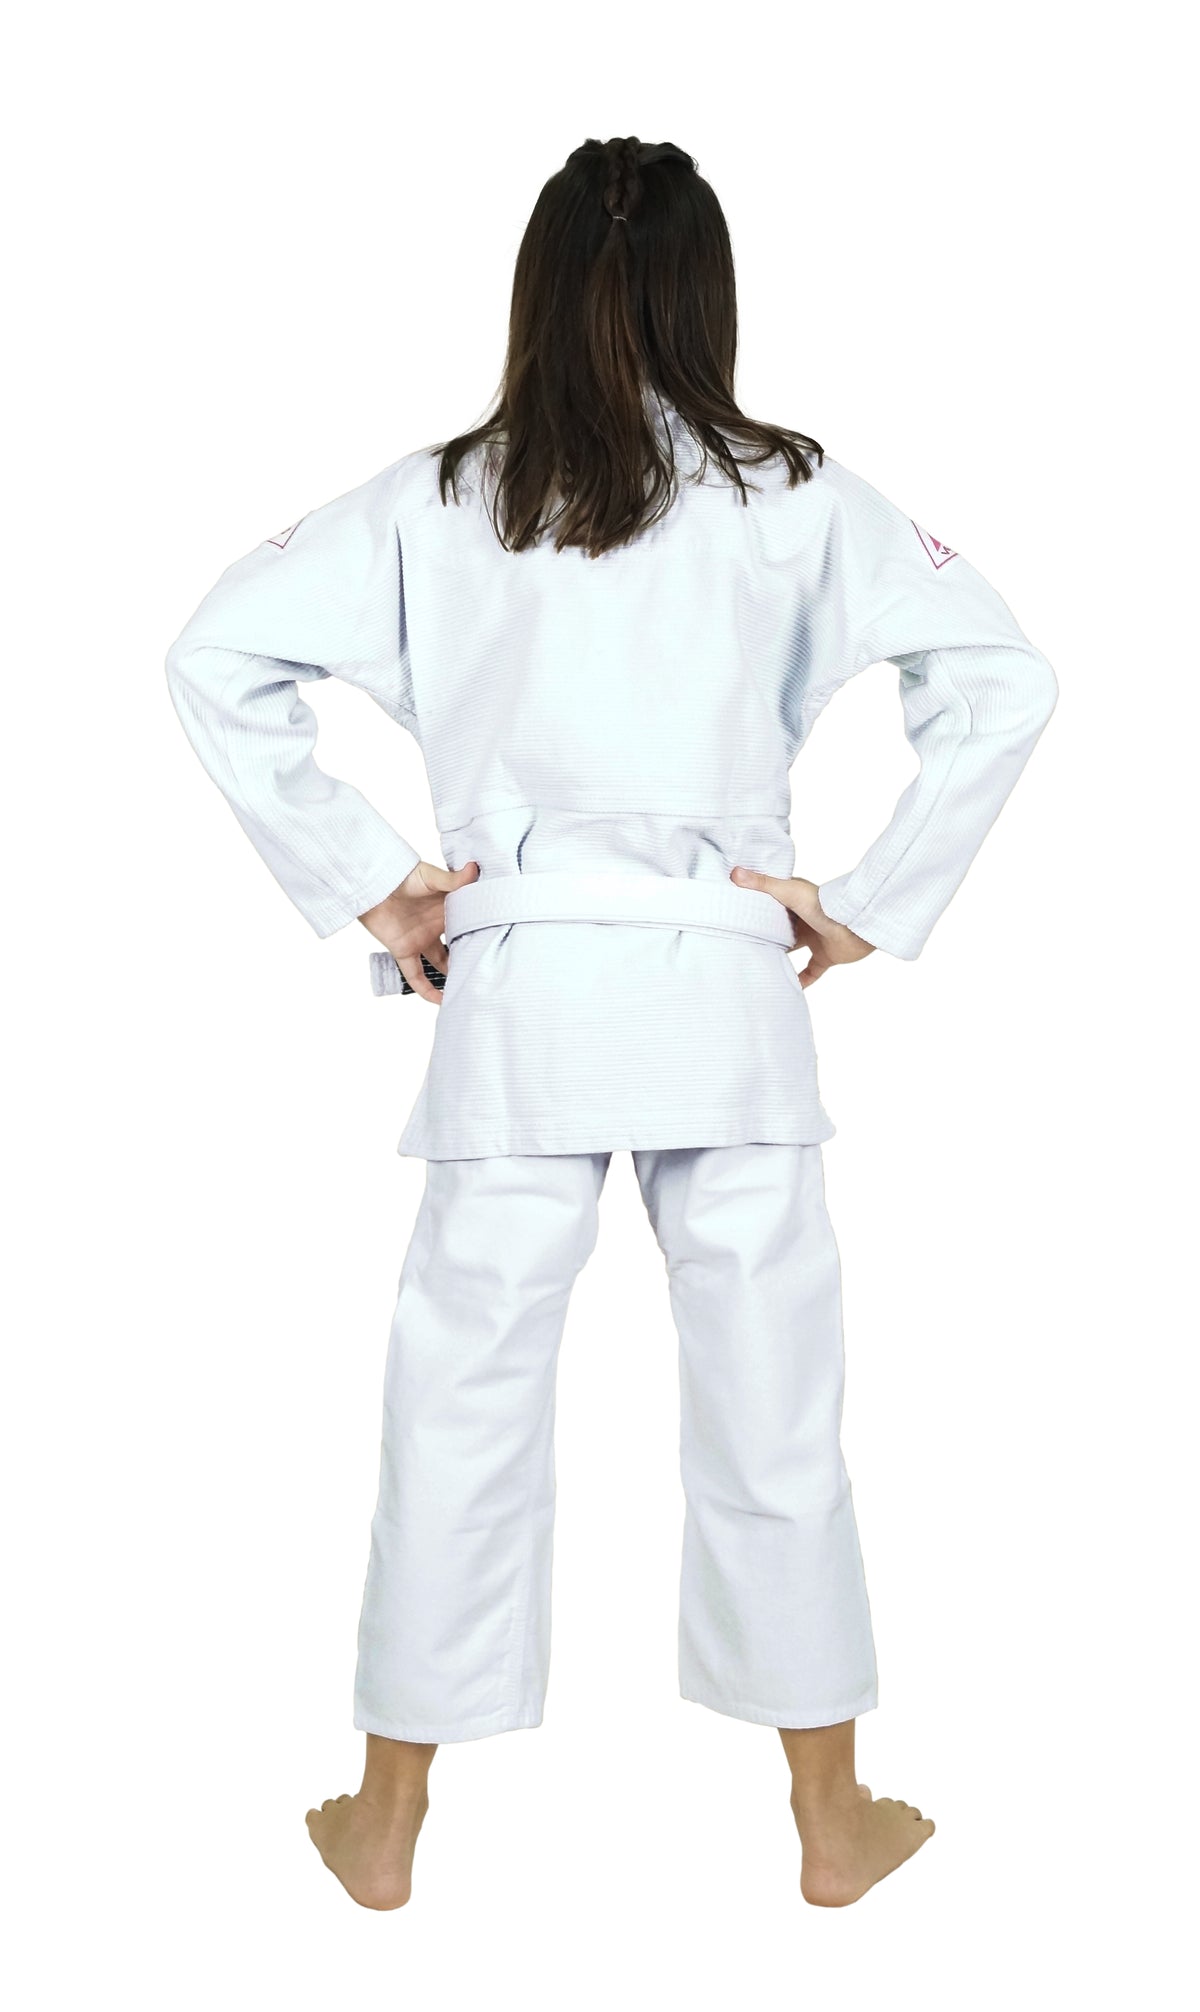 GIRLS PRO EVOLUTION KIDS Jiu-Jitsu Gi (White)